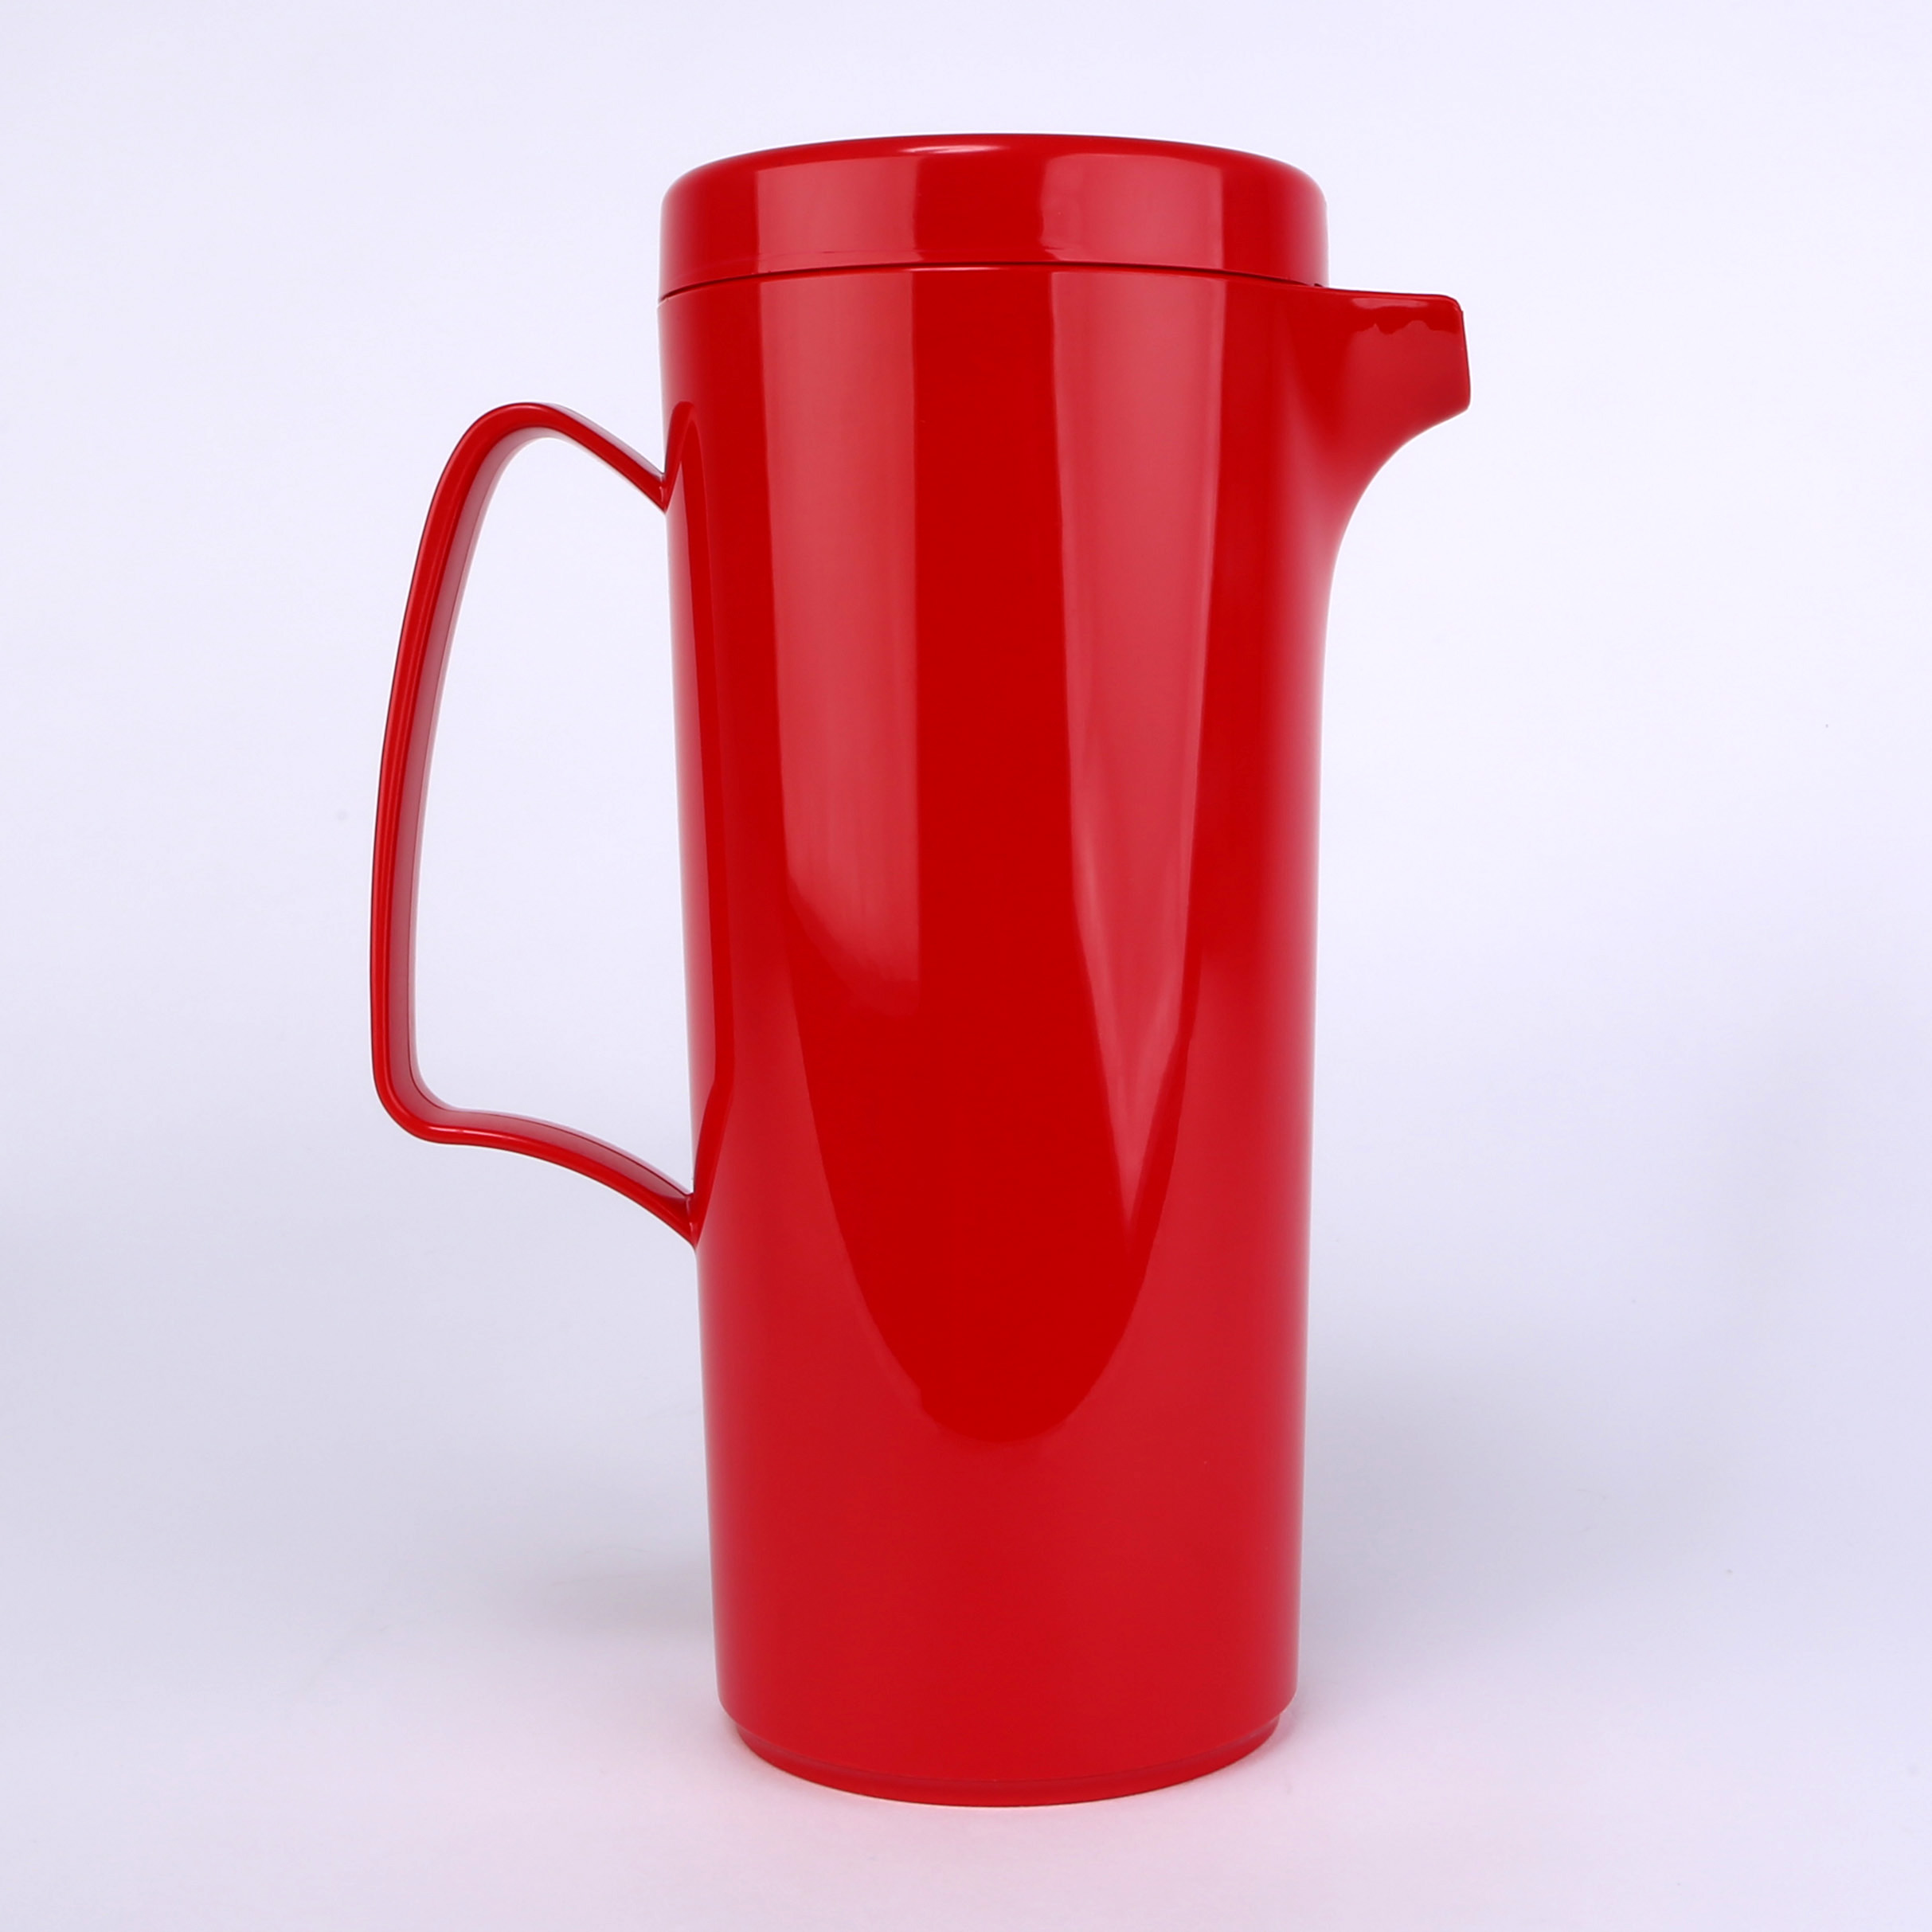 vaLon Zephyr Kanne 1 Liter mit Deckel aus schadstofffreiem Kunststoff in der Farbe rot.